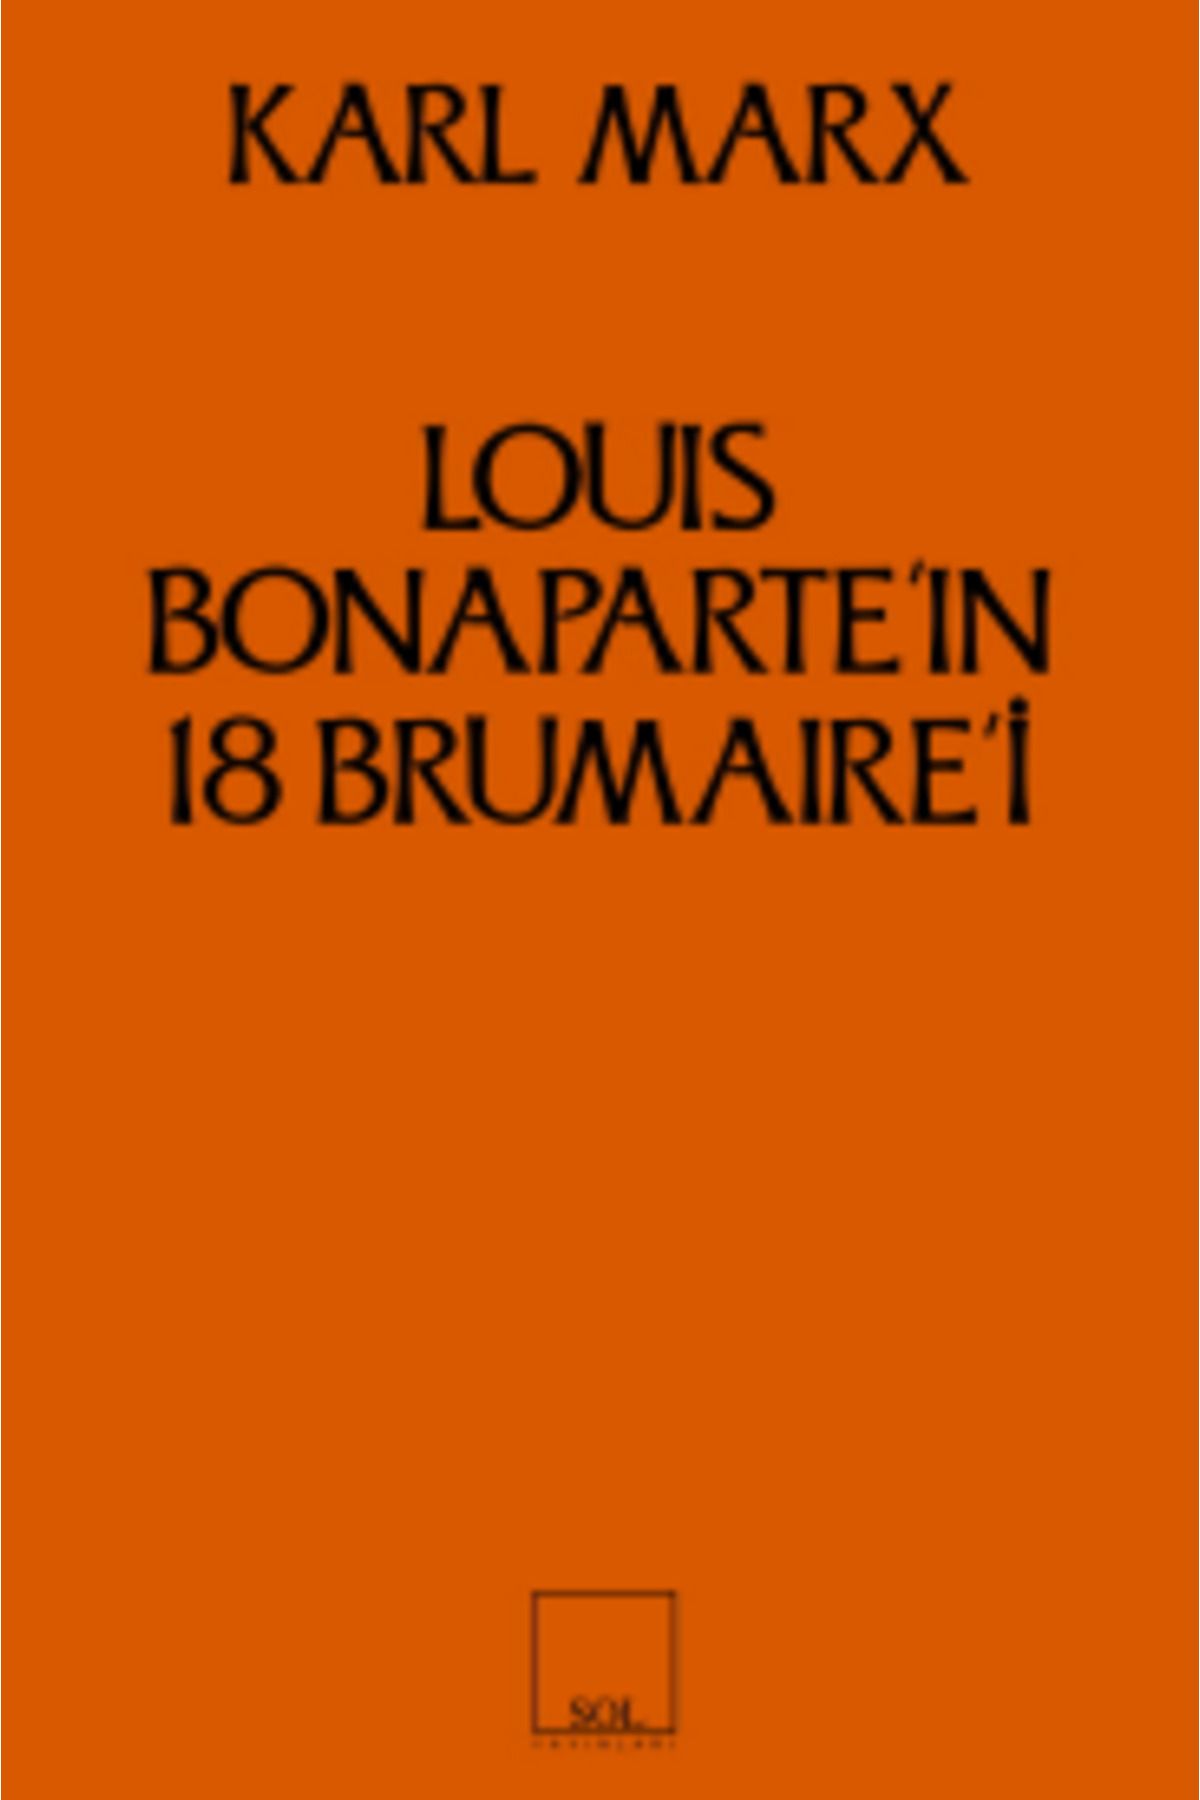 Sol Yayınları Louis Bonaparte’ın 18 Brumaire’i kitabı - Karl Marx - Sol Yayınları